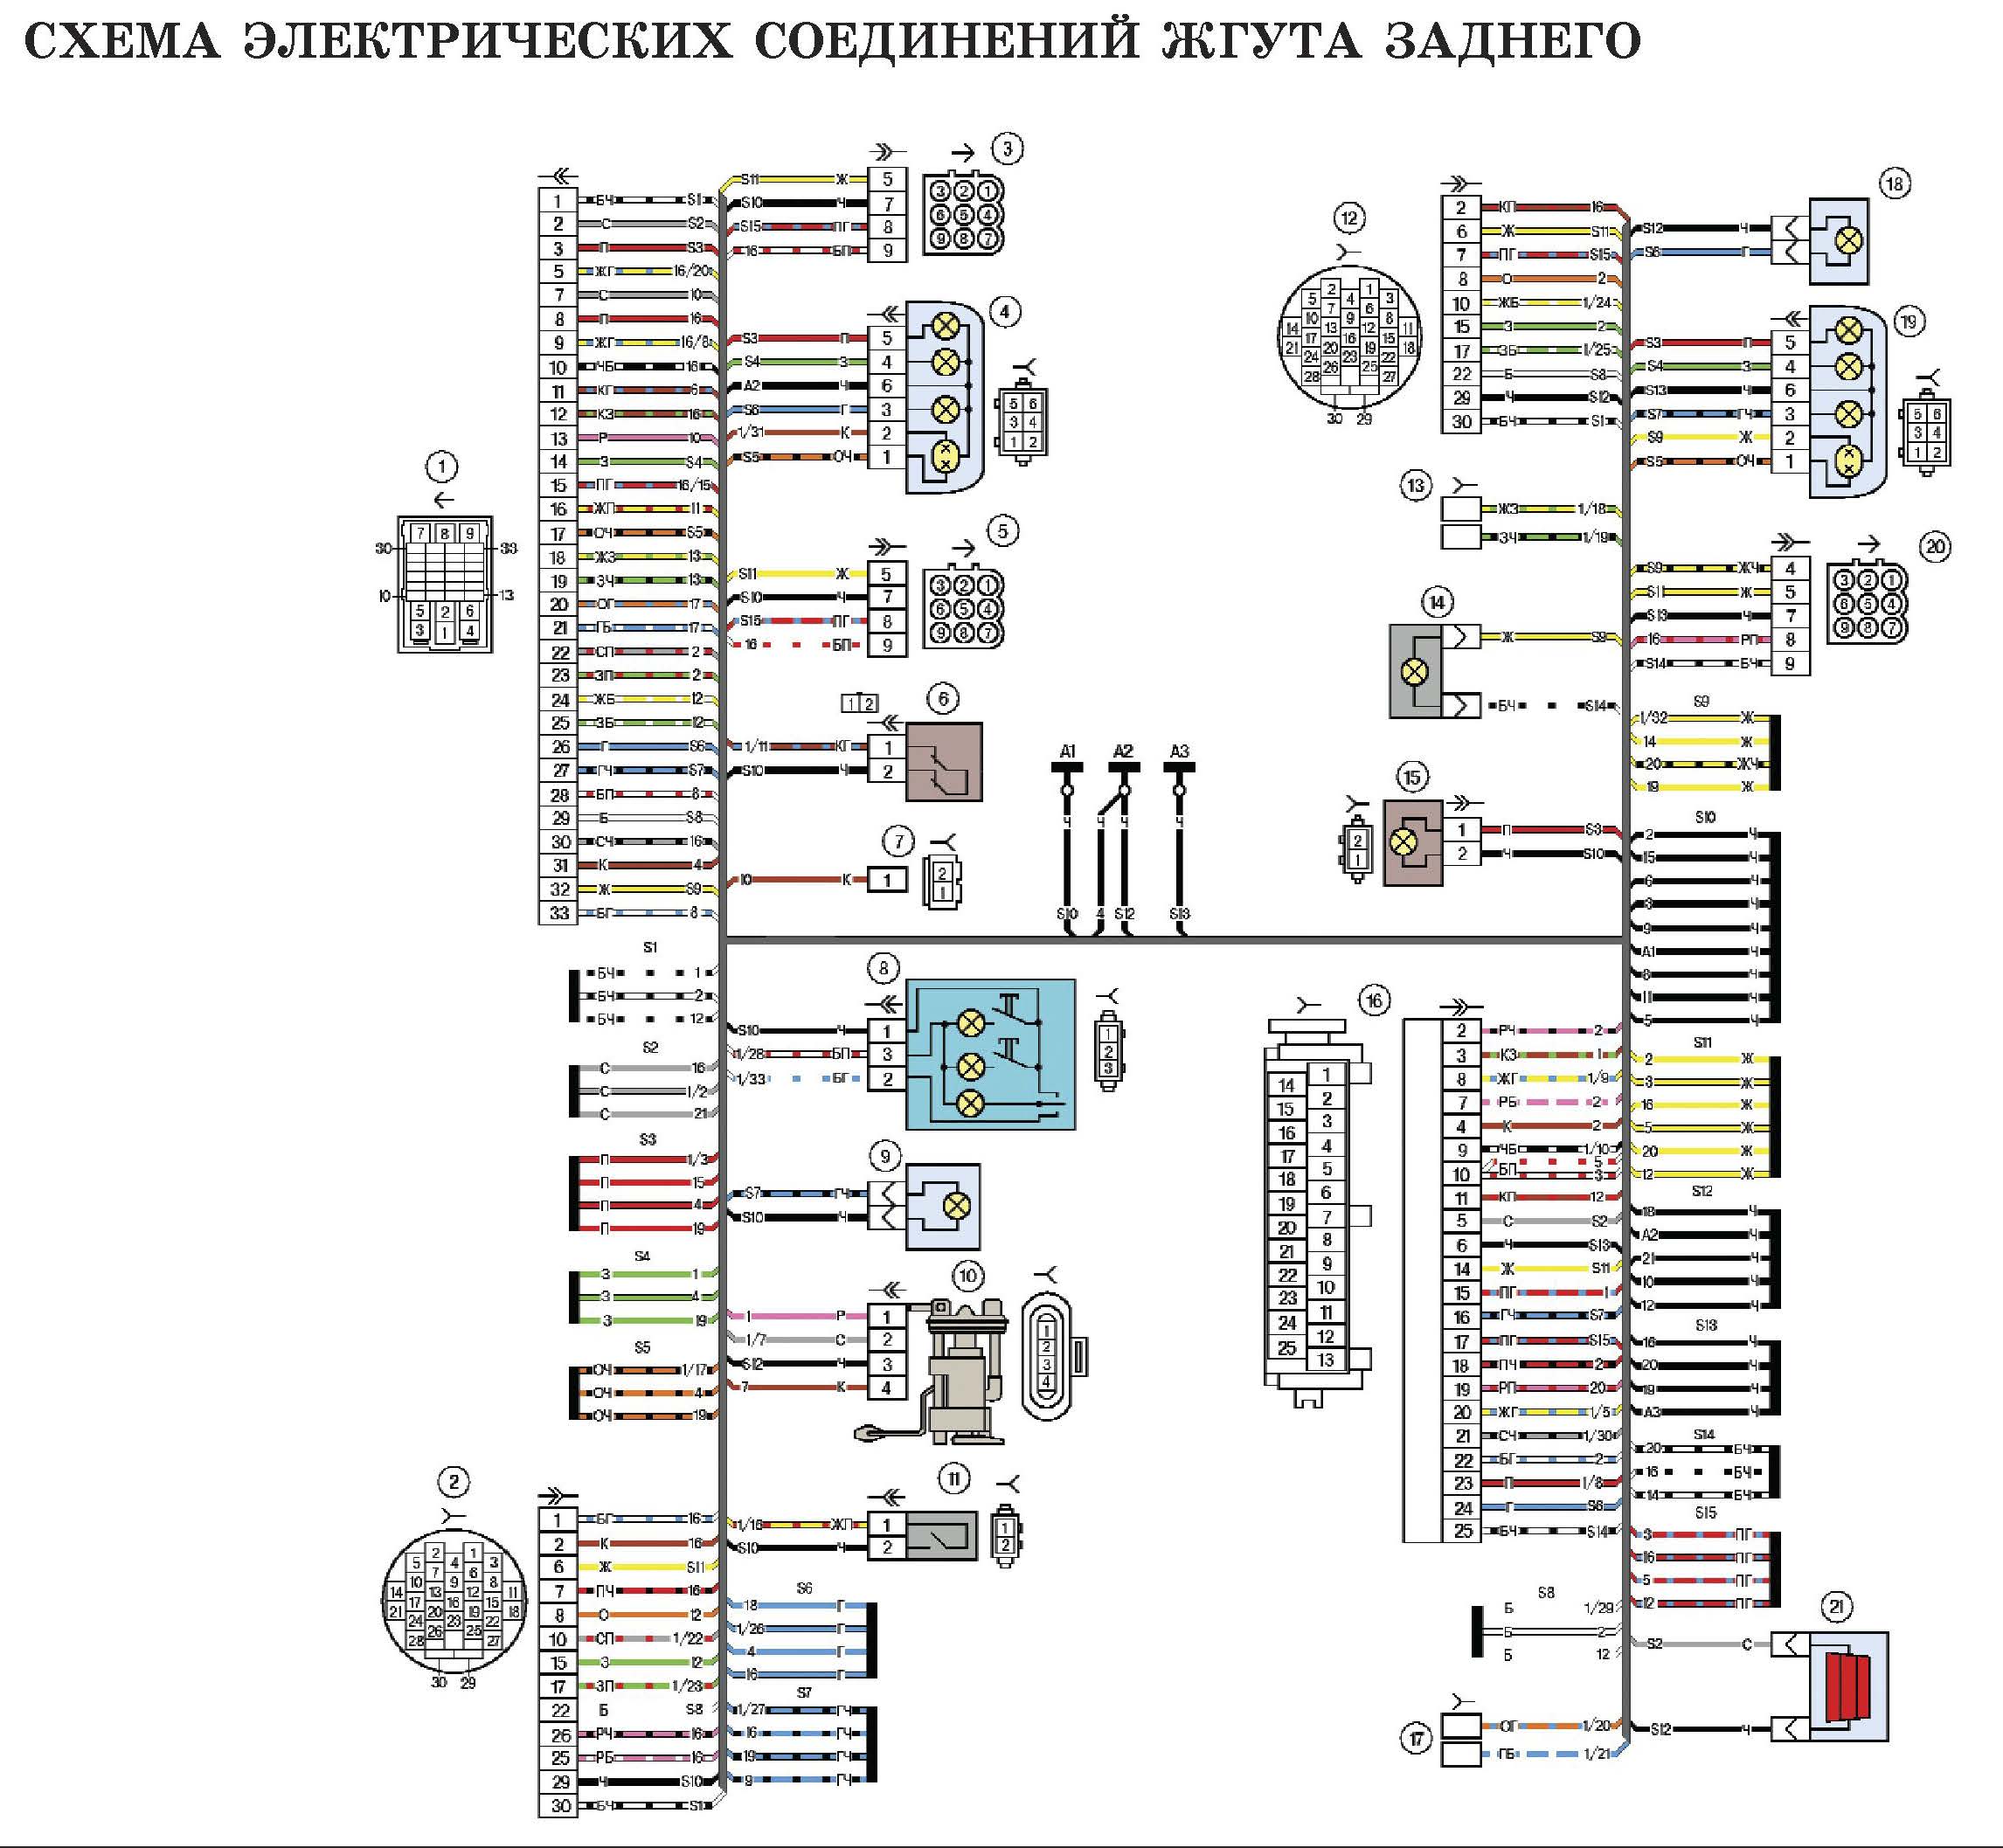 Схема электрических соединений жгута заднего автомобиля Лада Калина (LADA 1117 LADA 1118 LADA 1119)